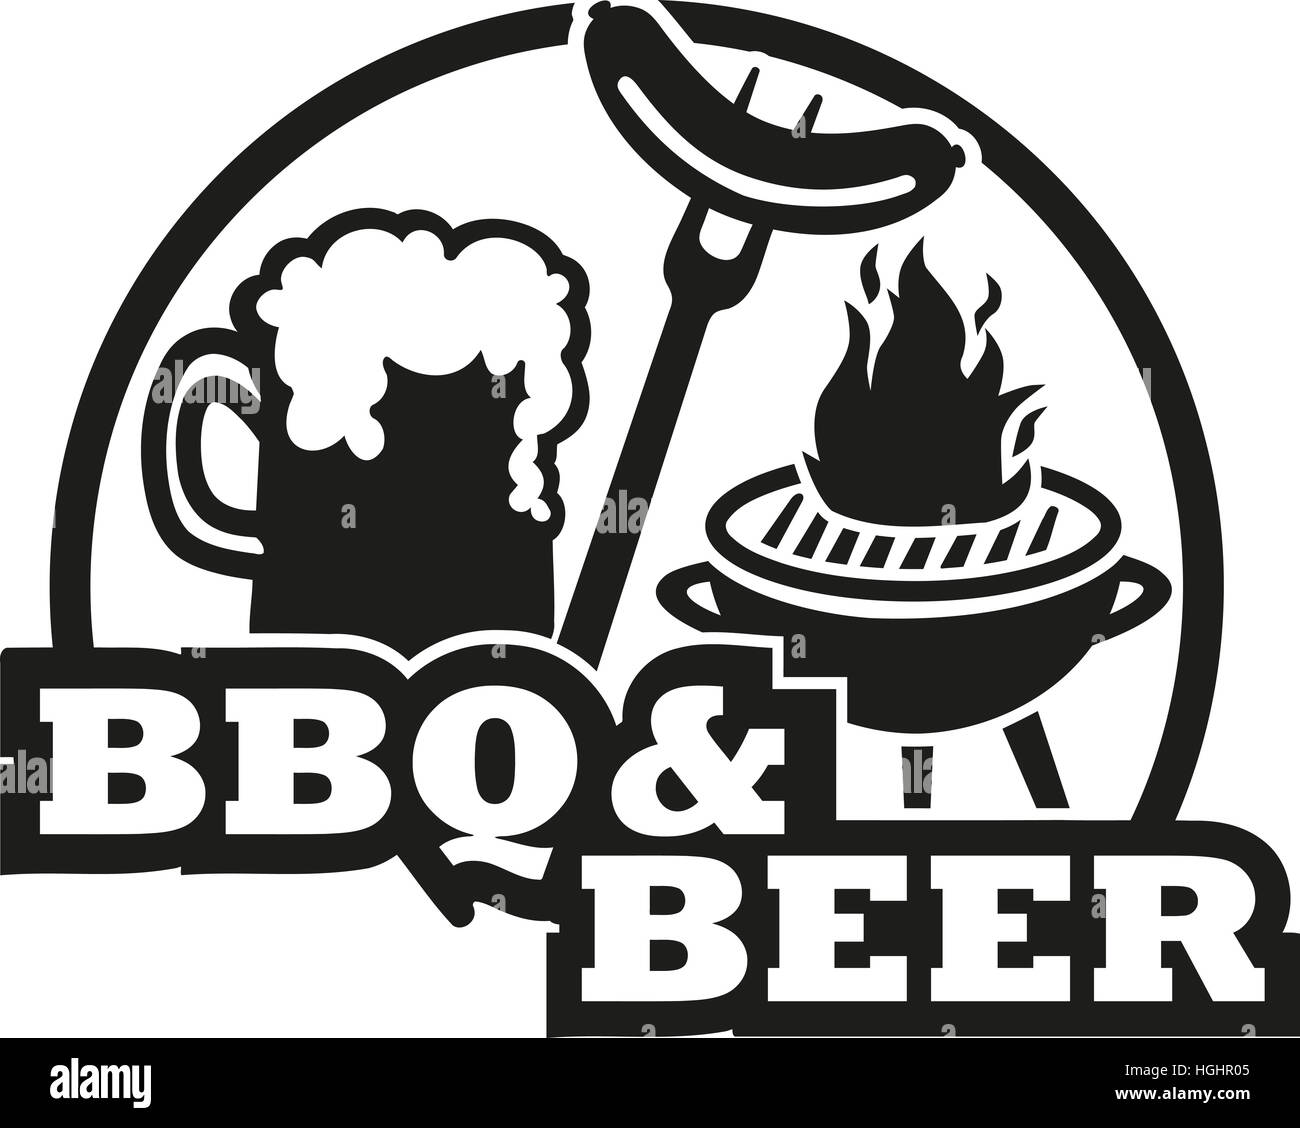 BBQ und Bier mit Grill und Wurst Stockfotografie - Alamy